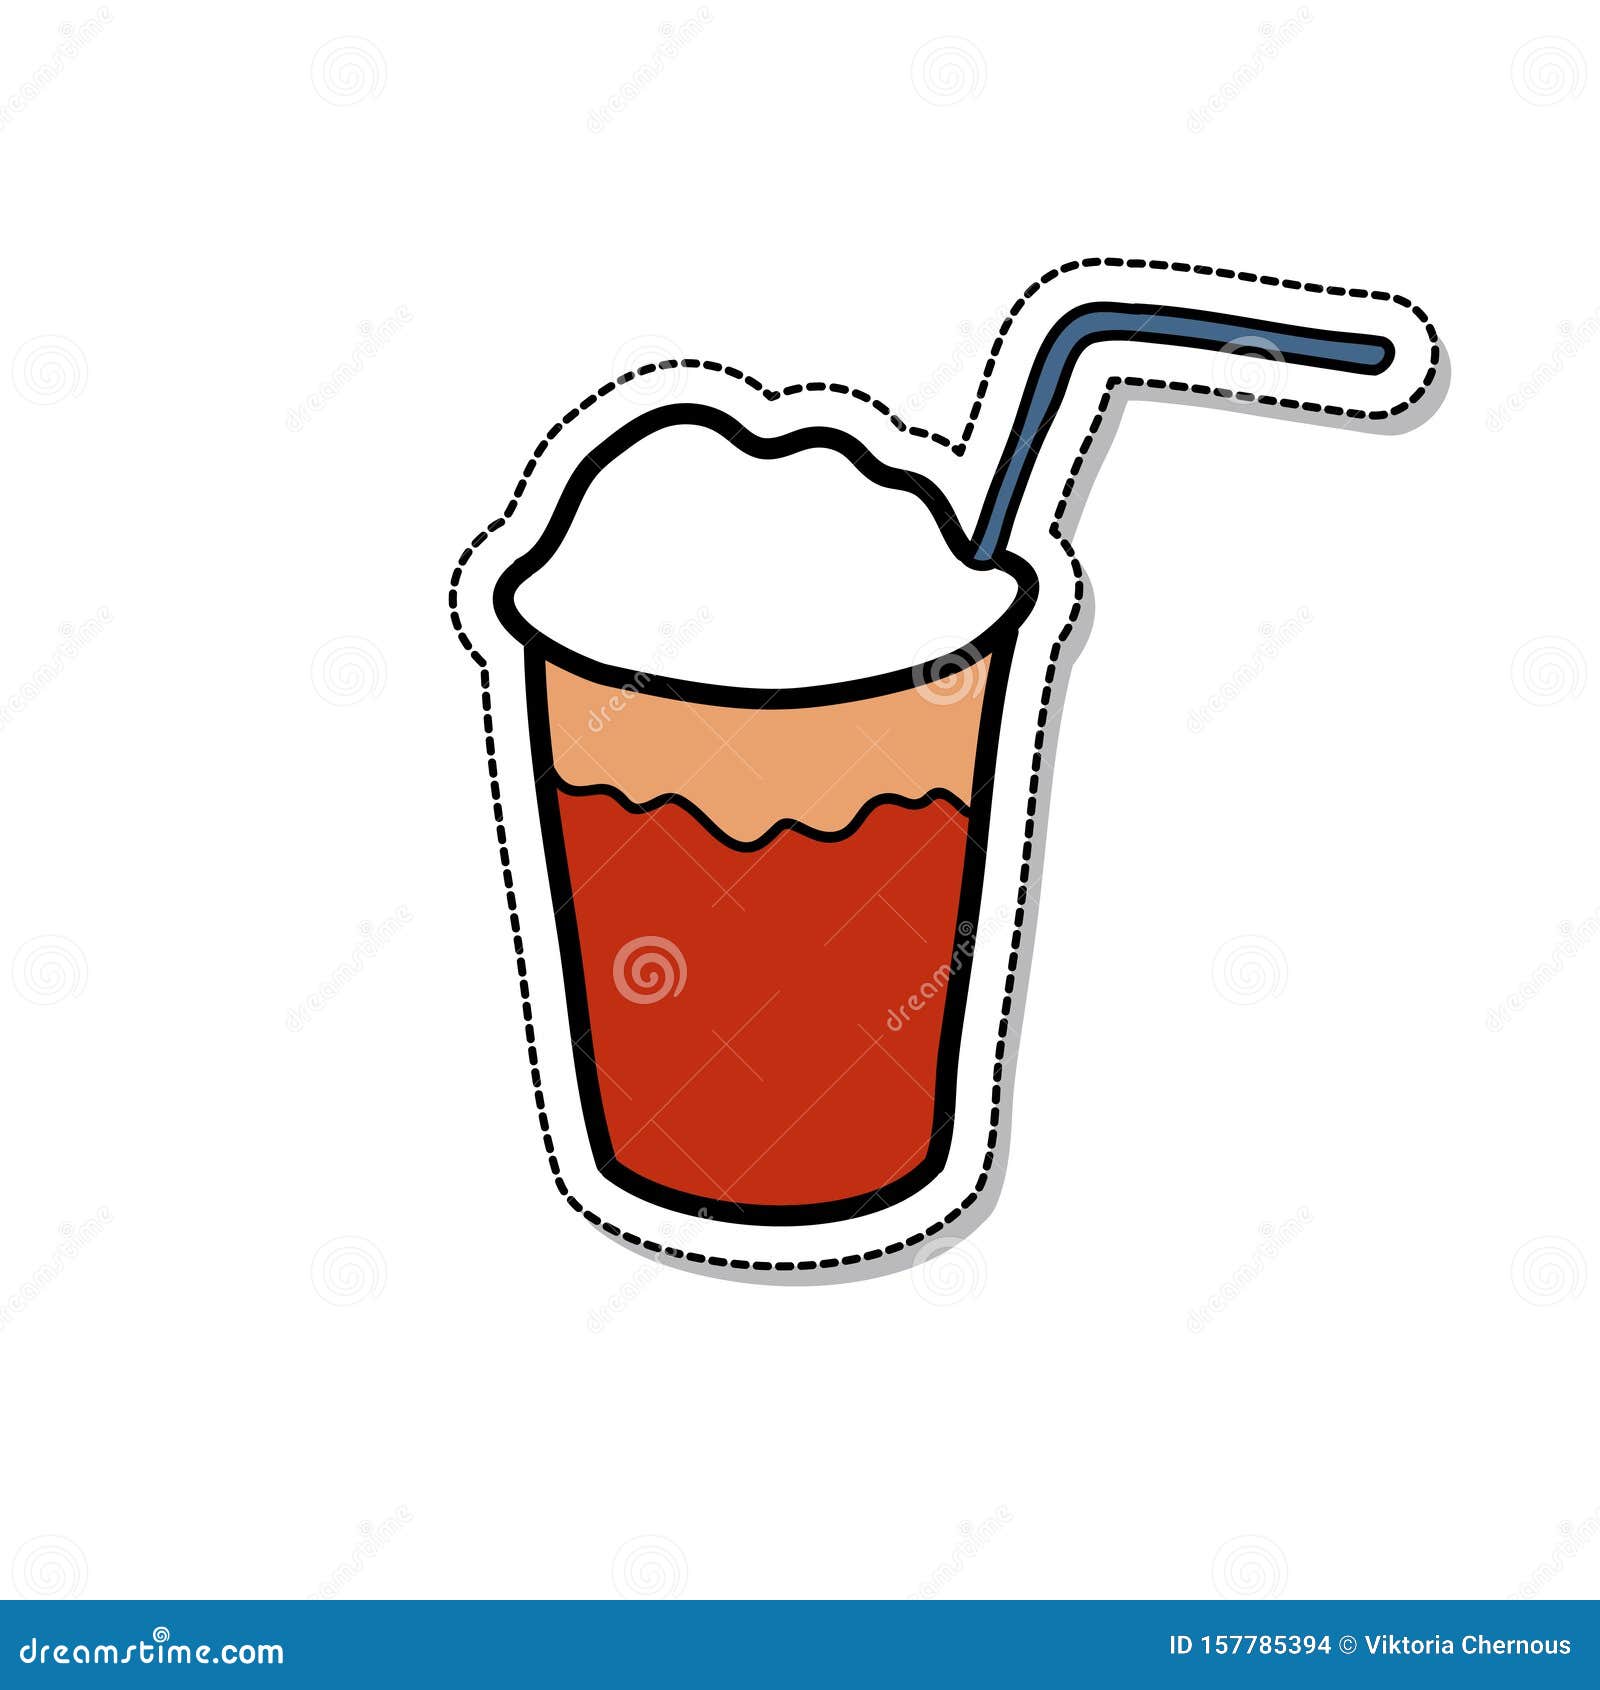 terremoto chilean drink doodle icon,  